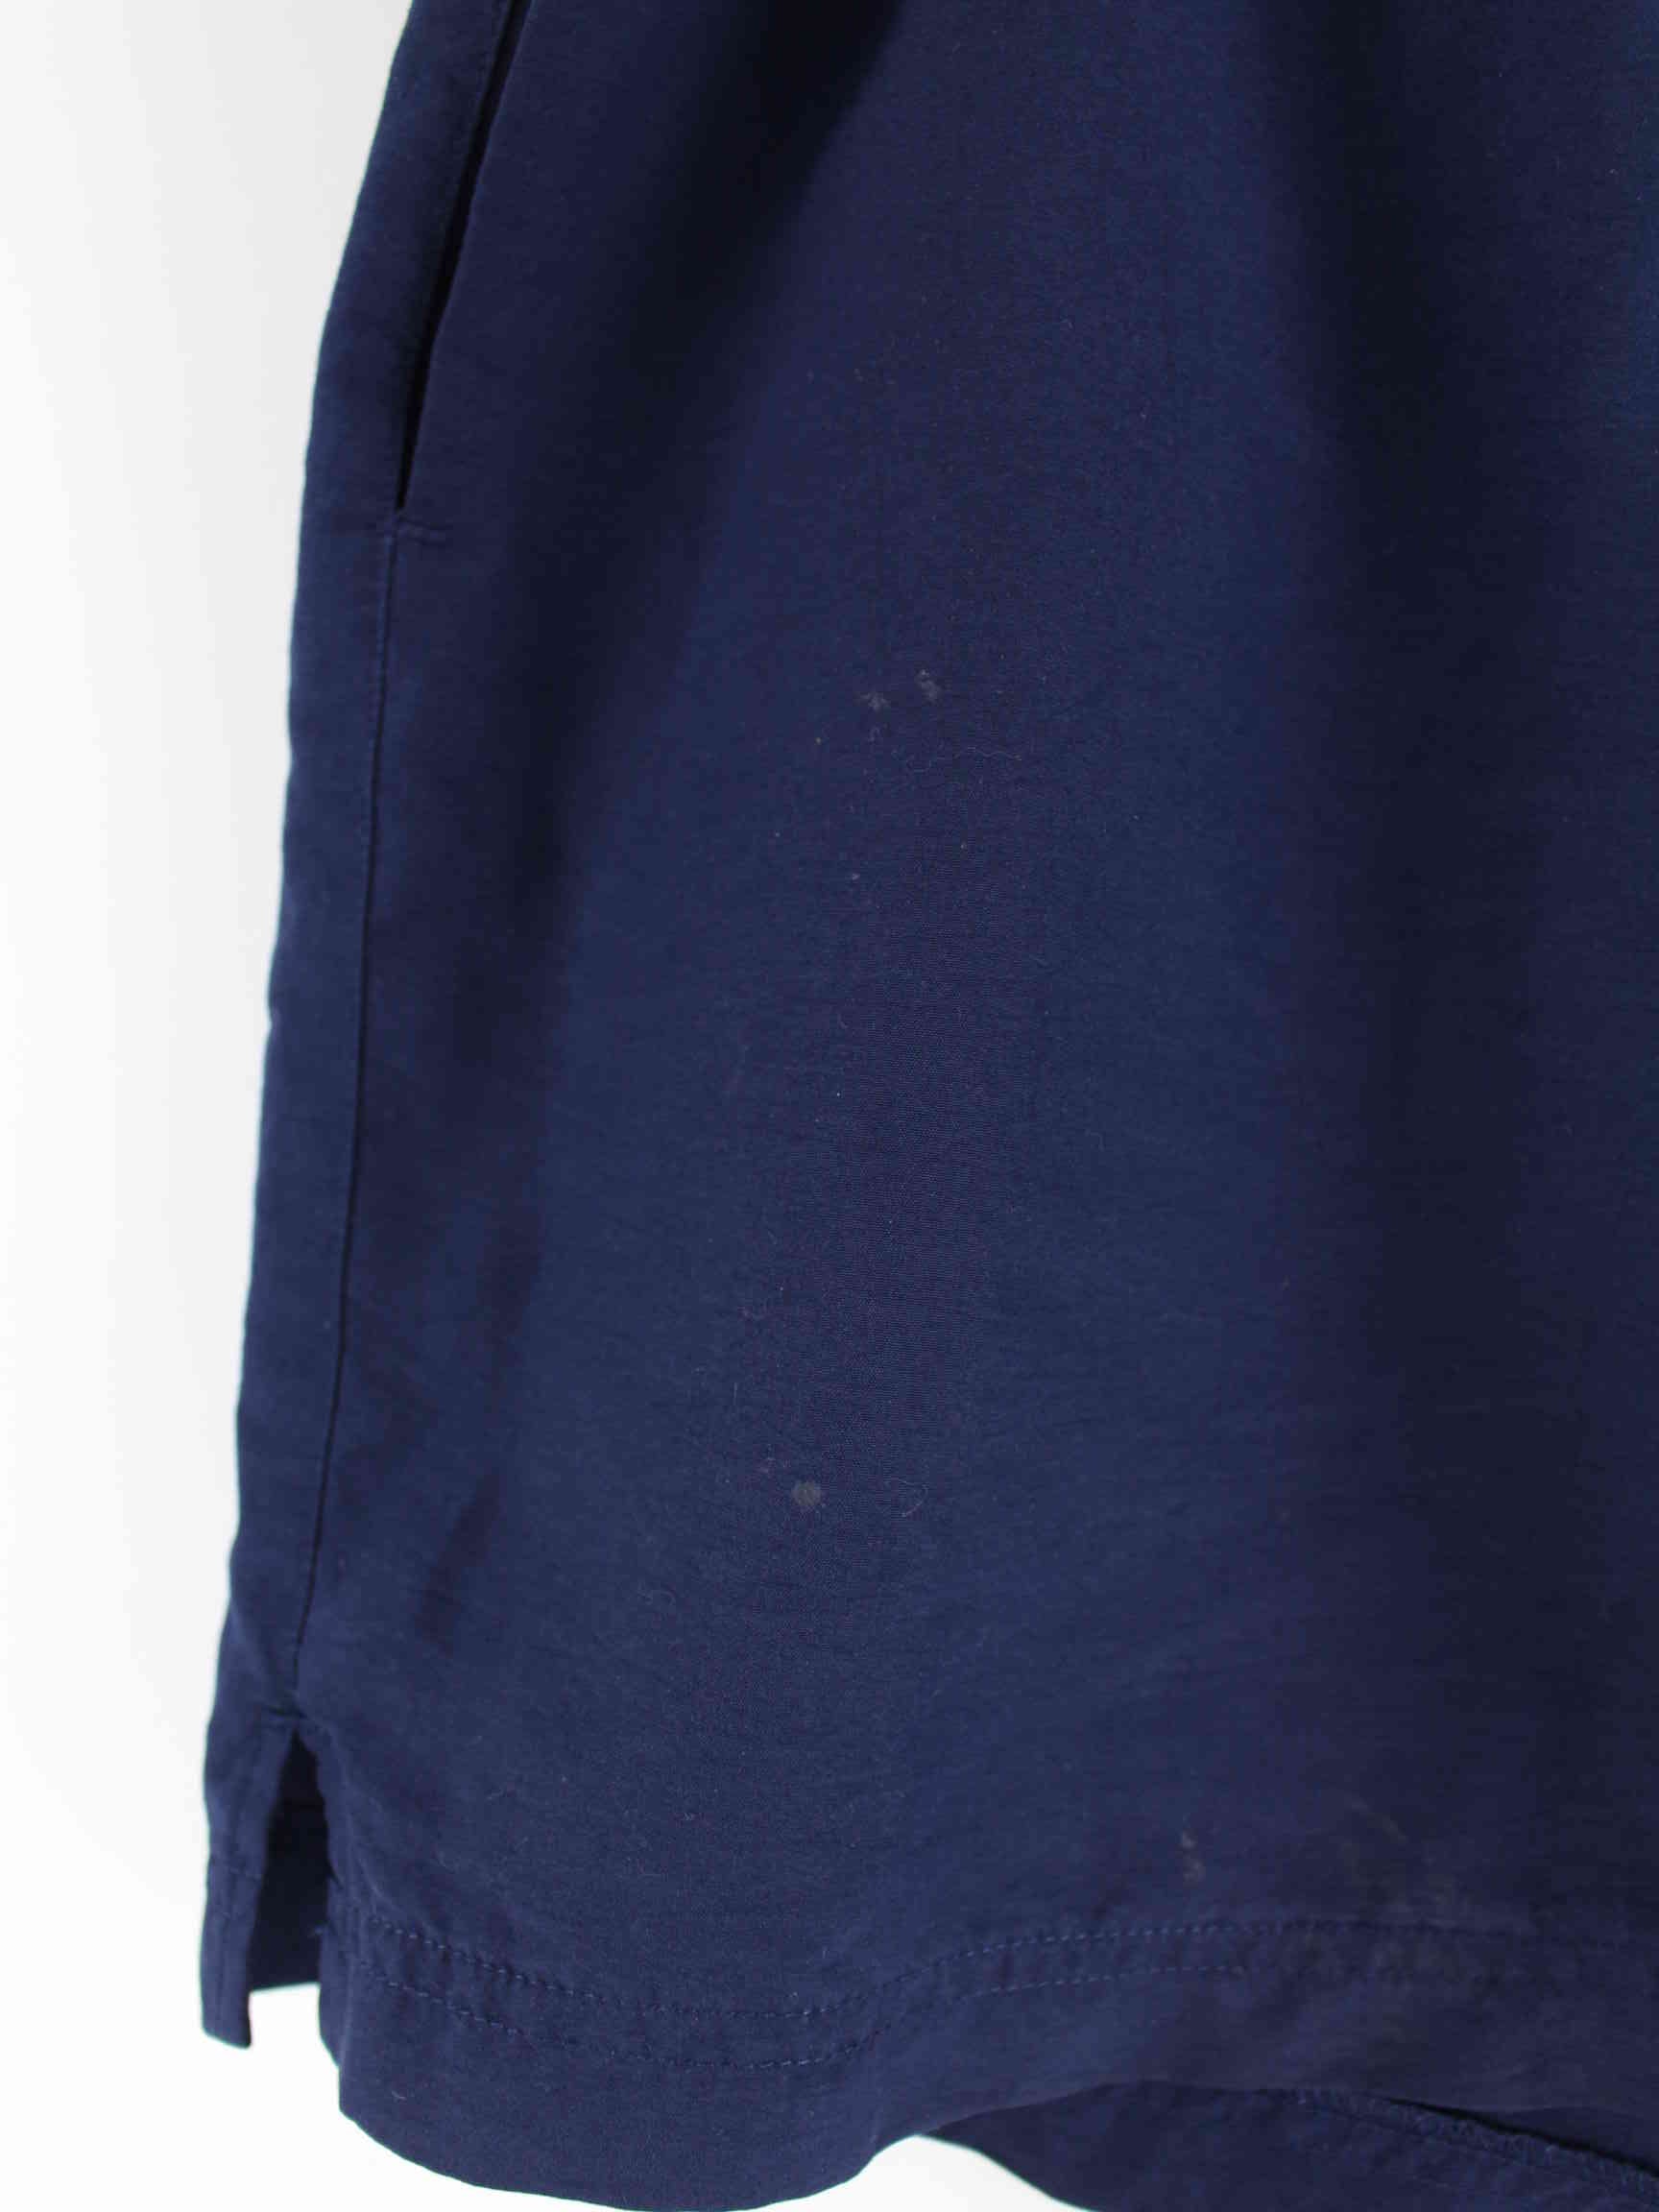 Adidas 90s Vintage Trefoil Shorts Blau L (detail image 2)